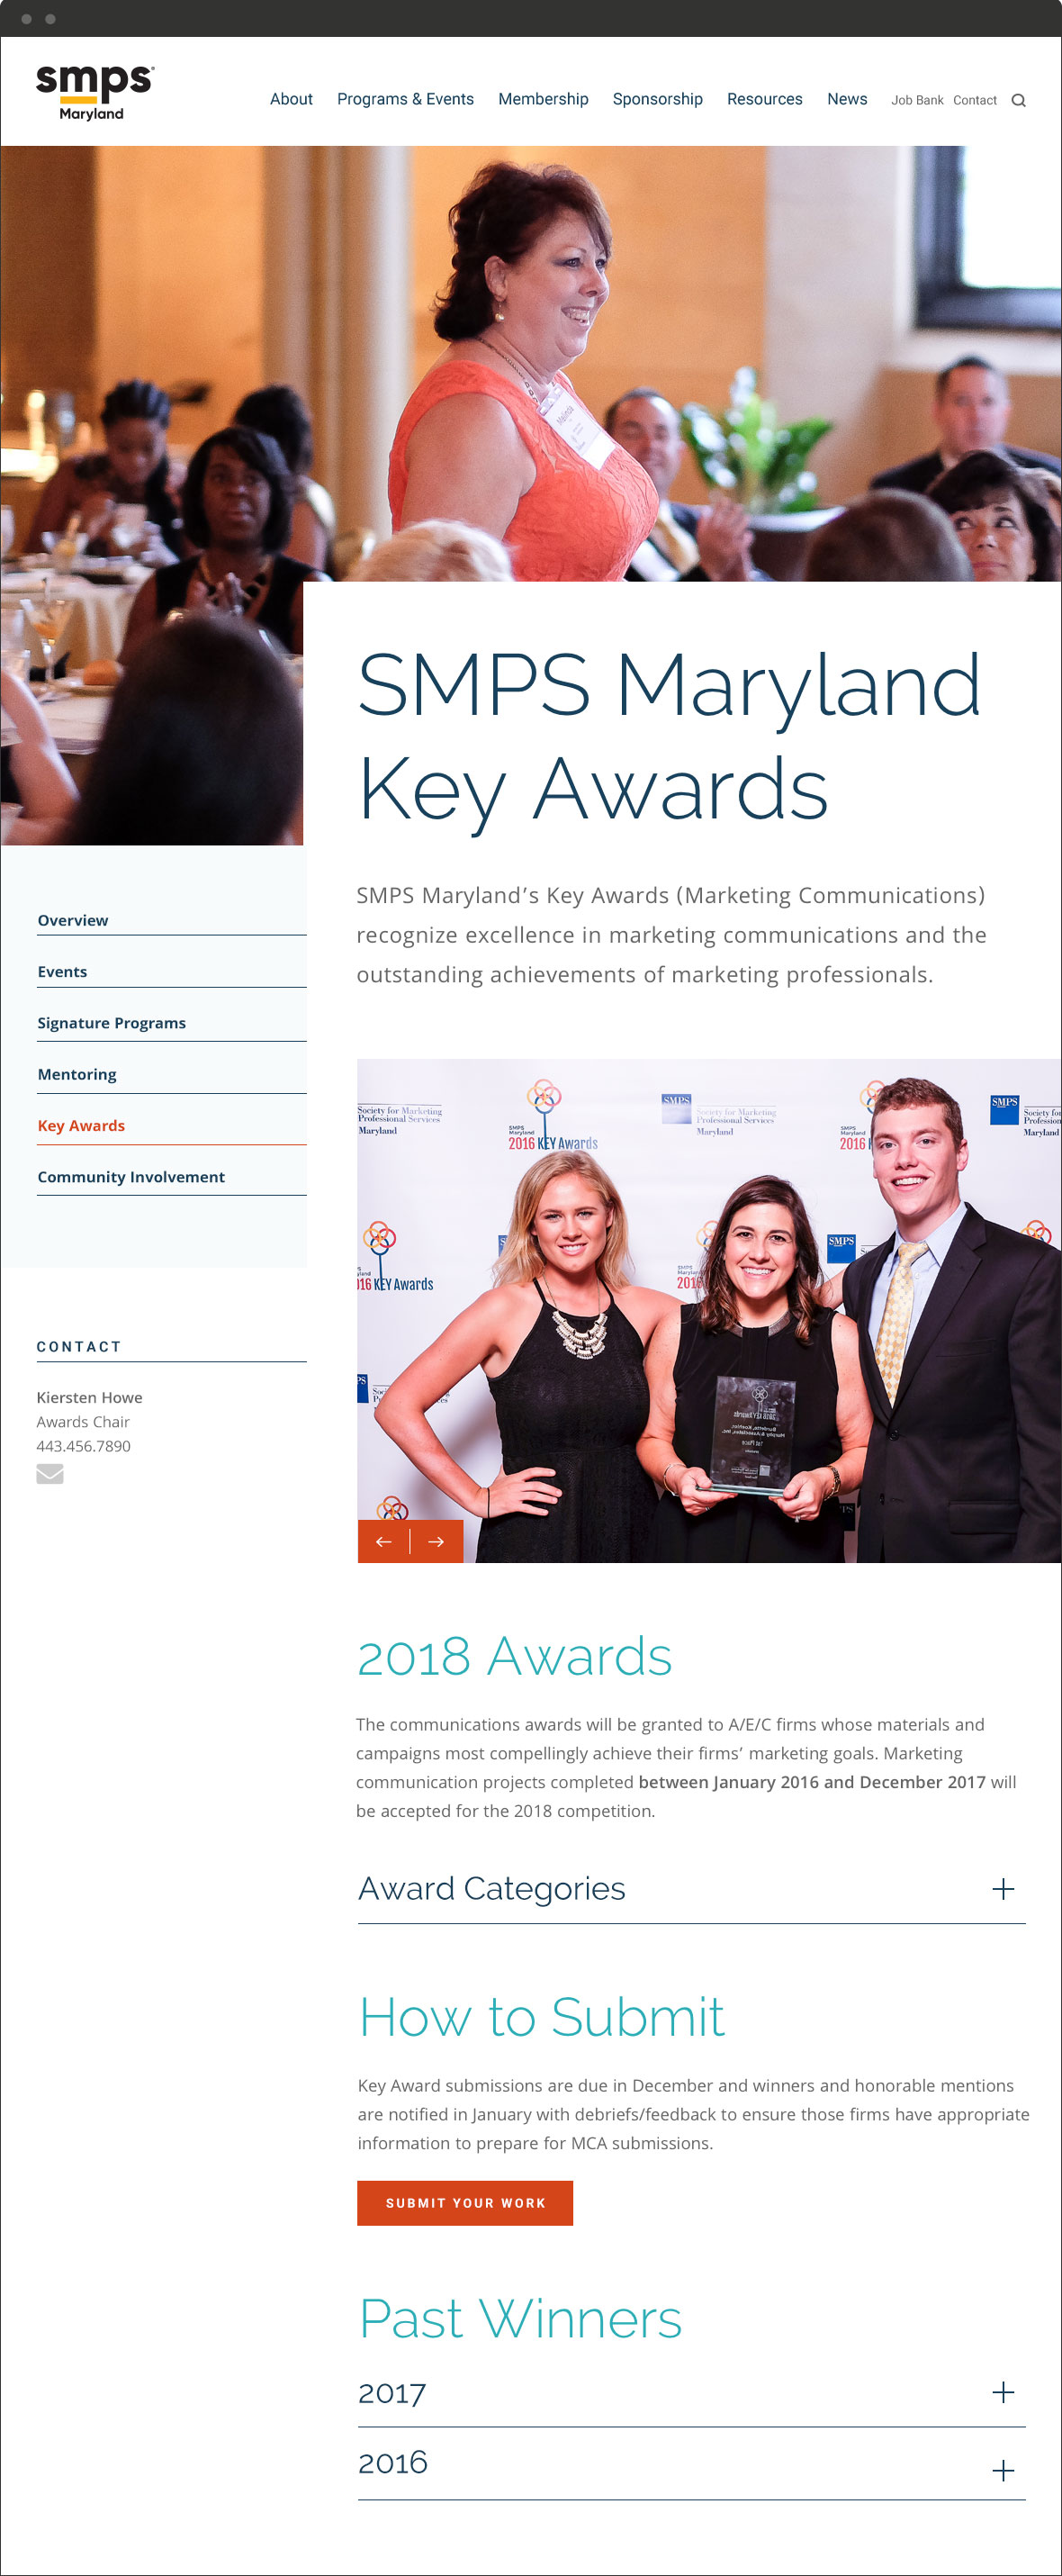 SMPS Maryland Key Awards